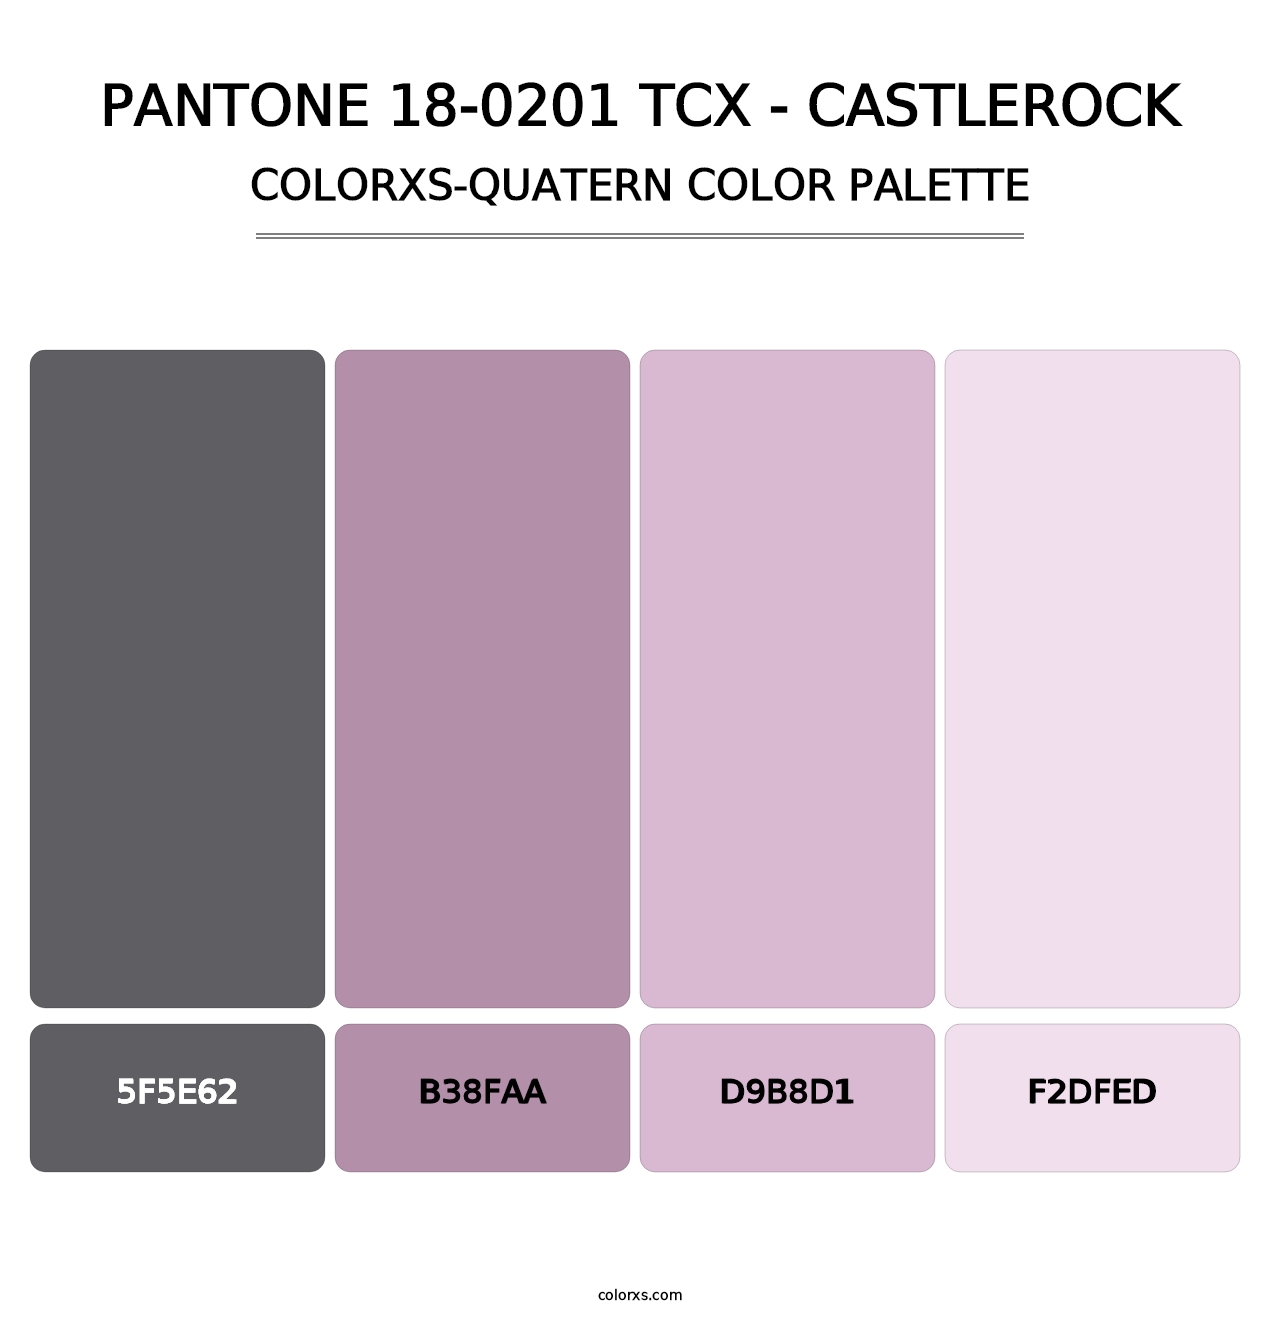 PANTONE 18-0201 TCX - Castlerock - Colorxs Quatern Palette